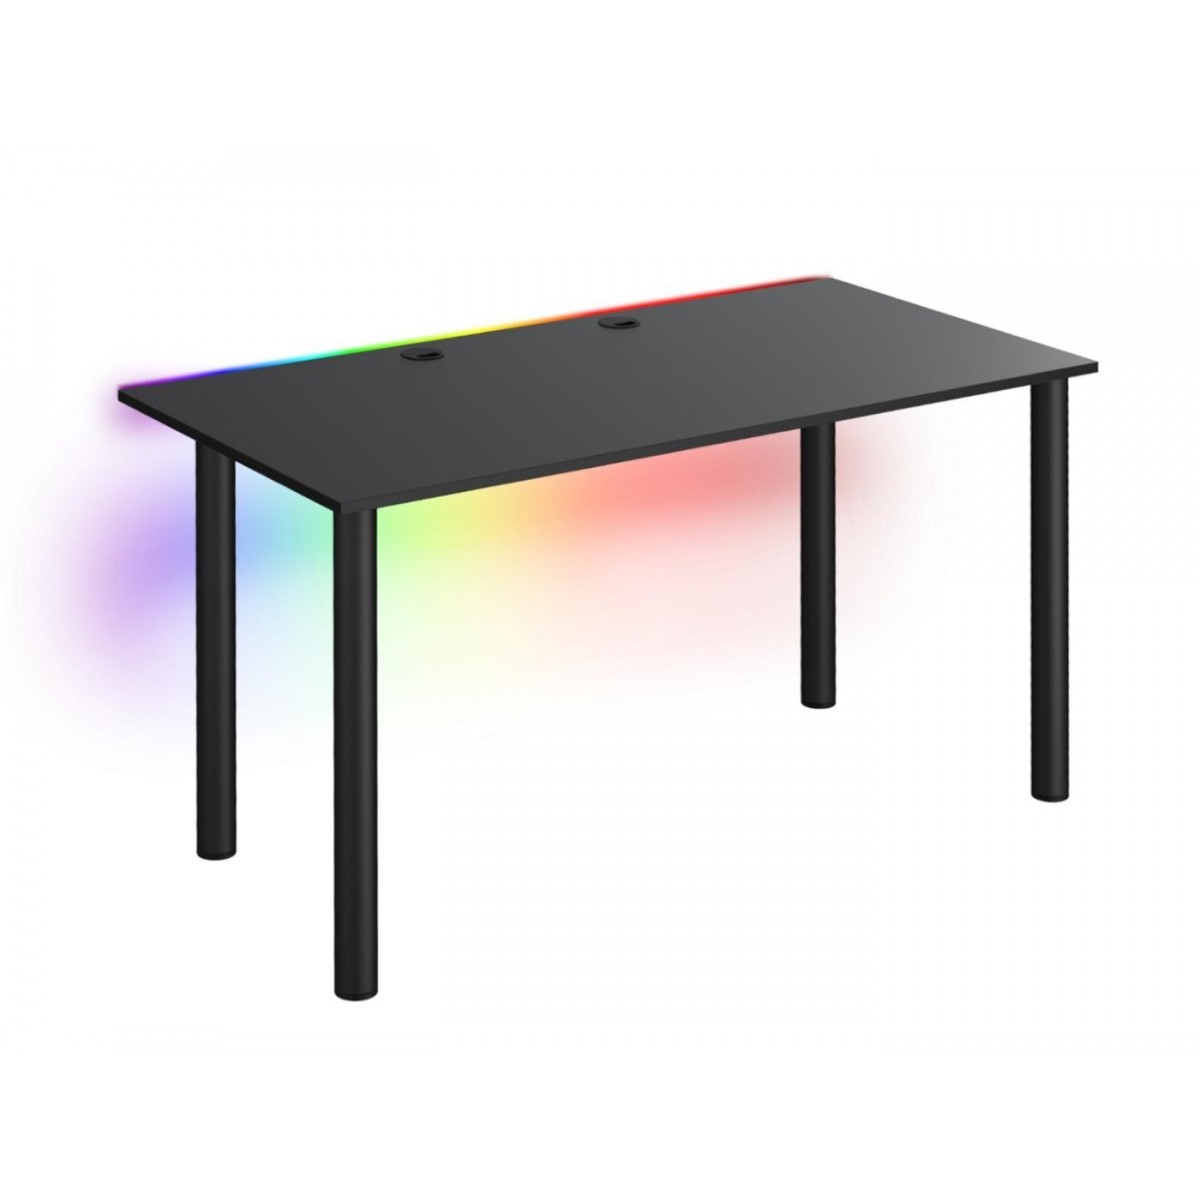 Tanie biurko dla gracza Basia XL czarne LED pilot przelotka 68x138cm